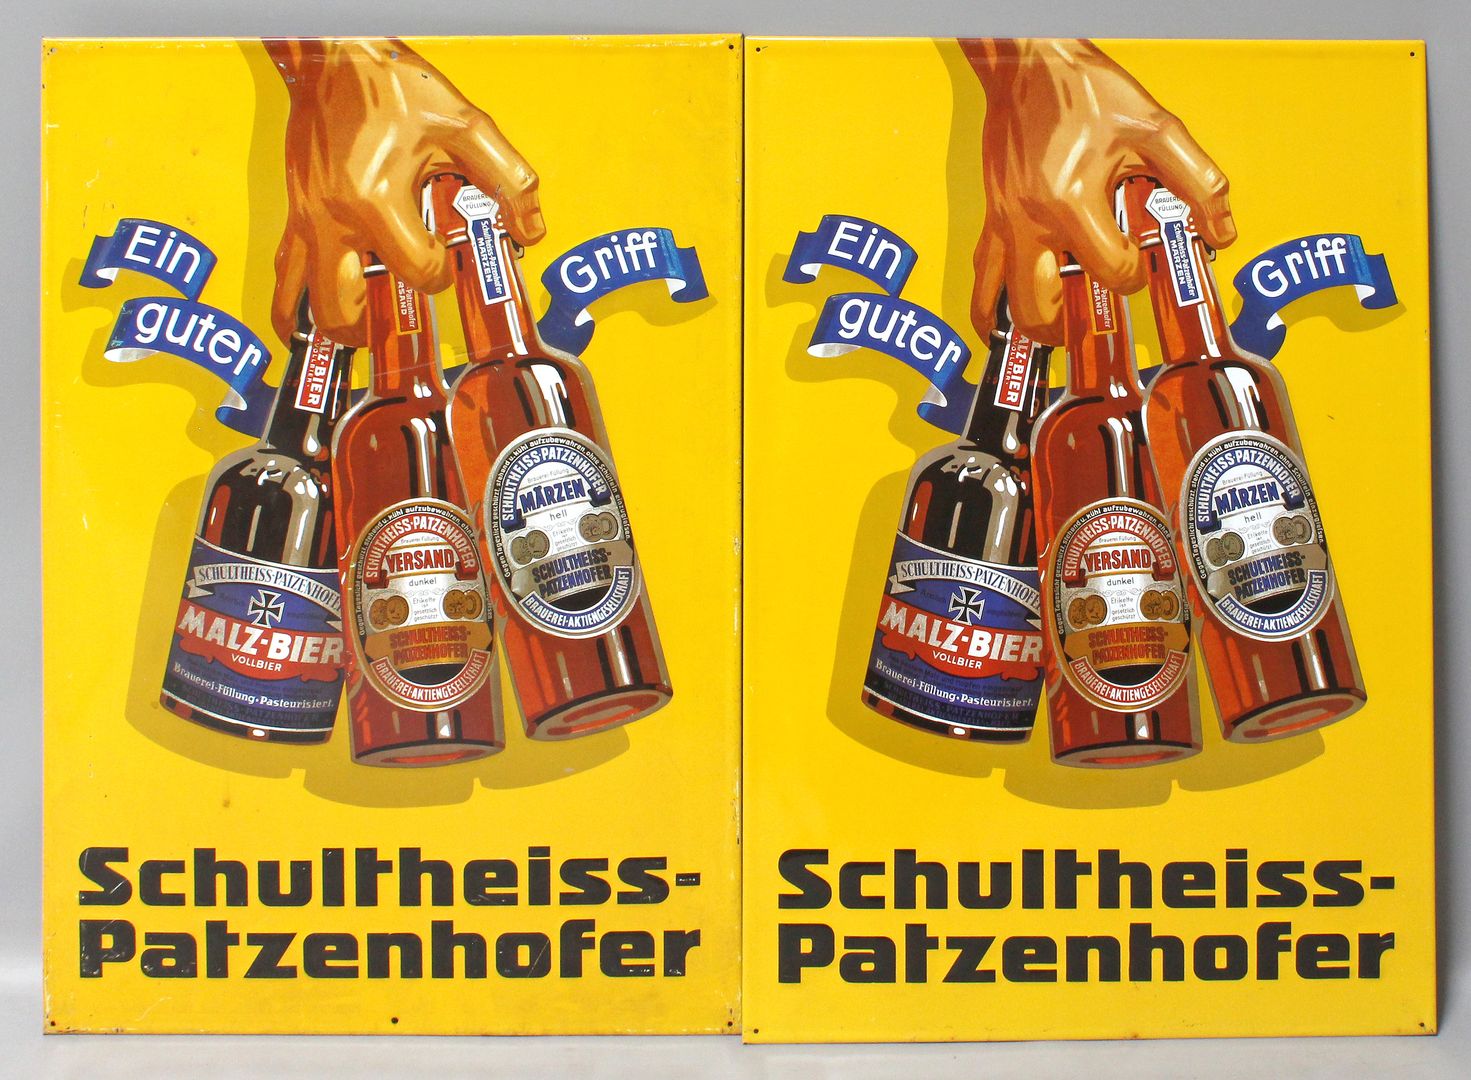 2 Schilder "Schultheiss-Patzenhofer".